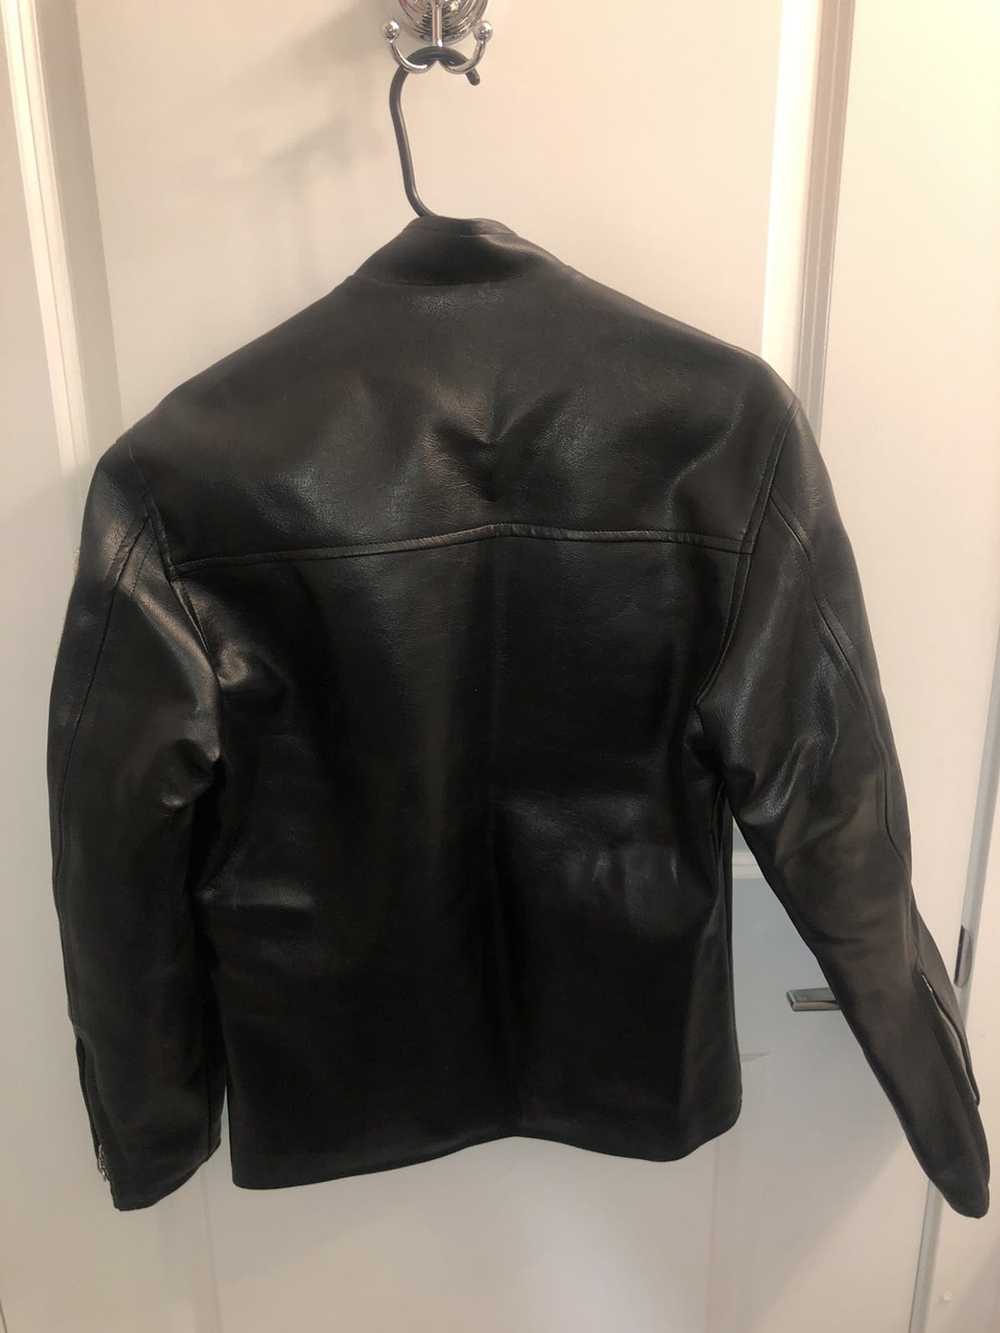 Japanese Brand Suco Japanese Leather Jacket - image 2